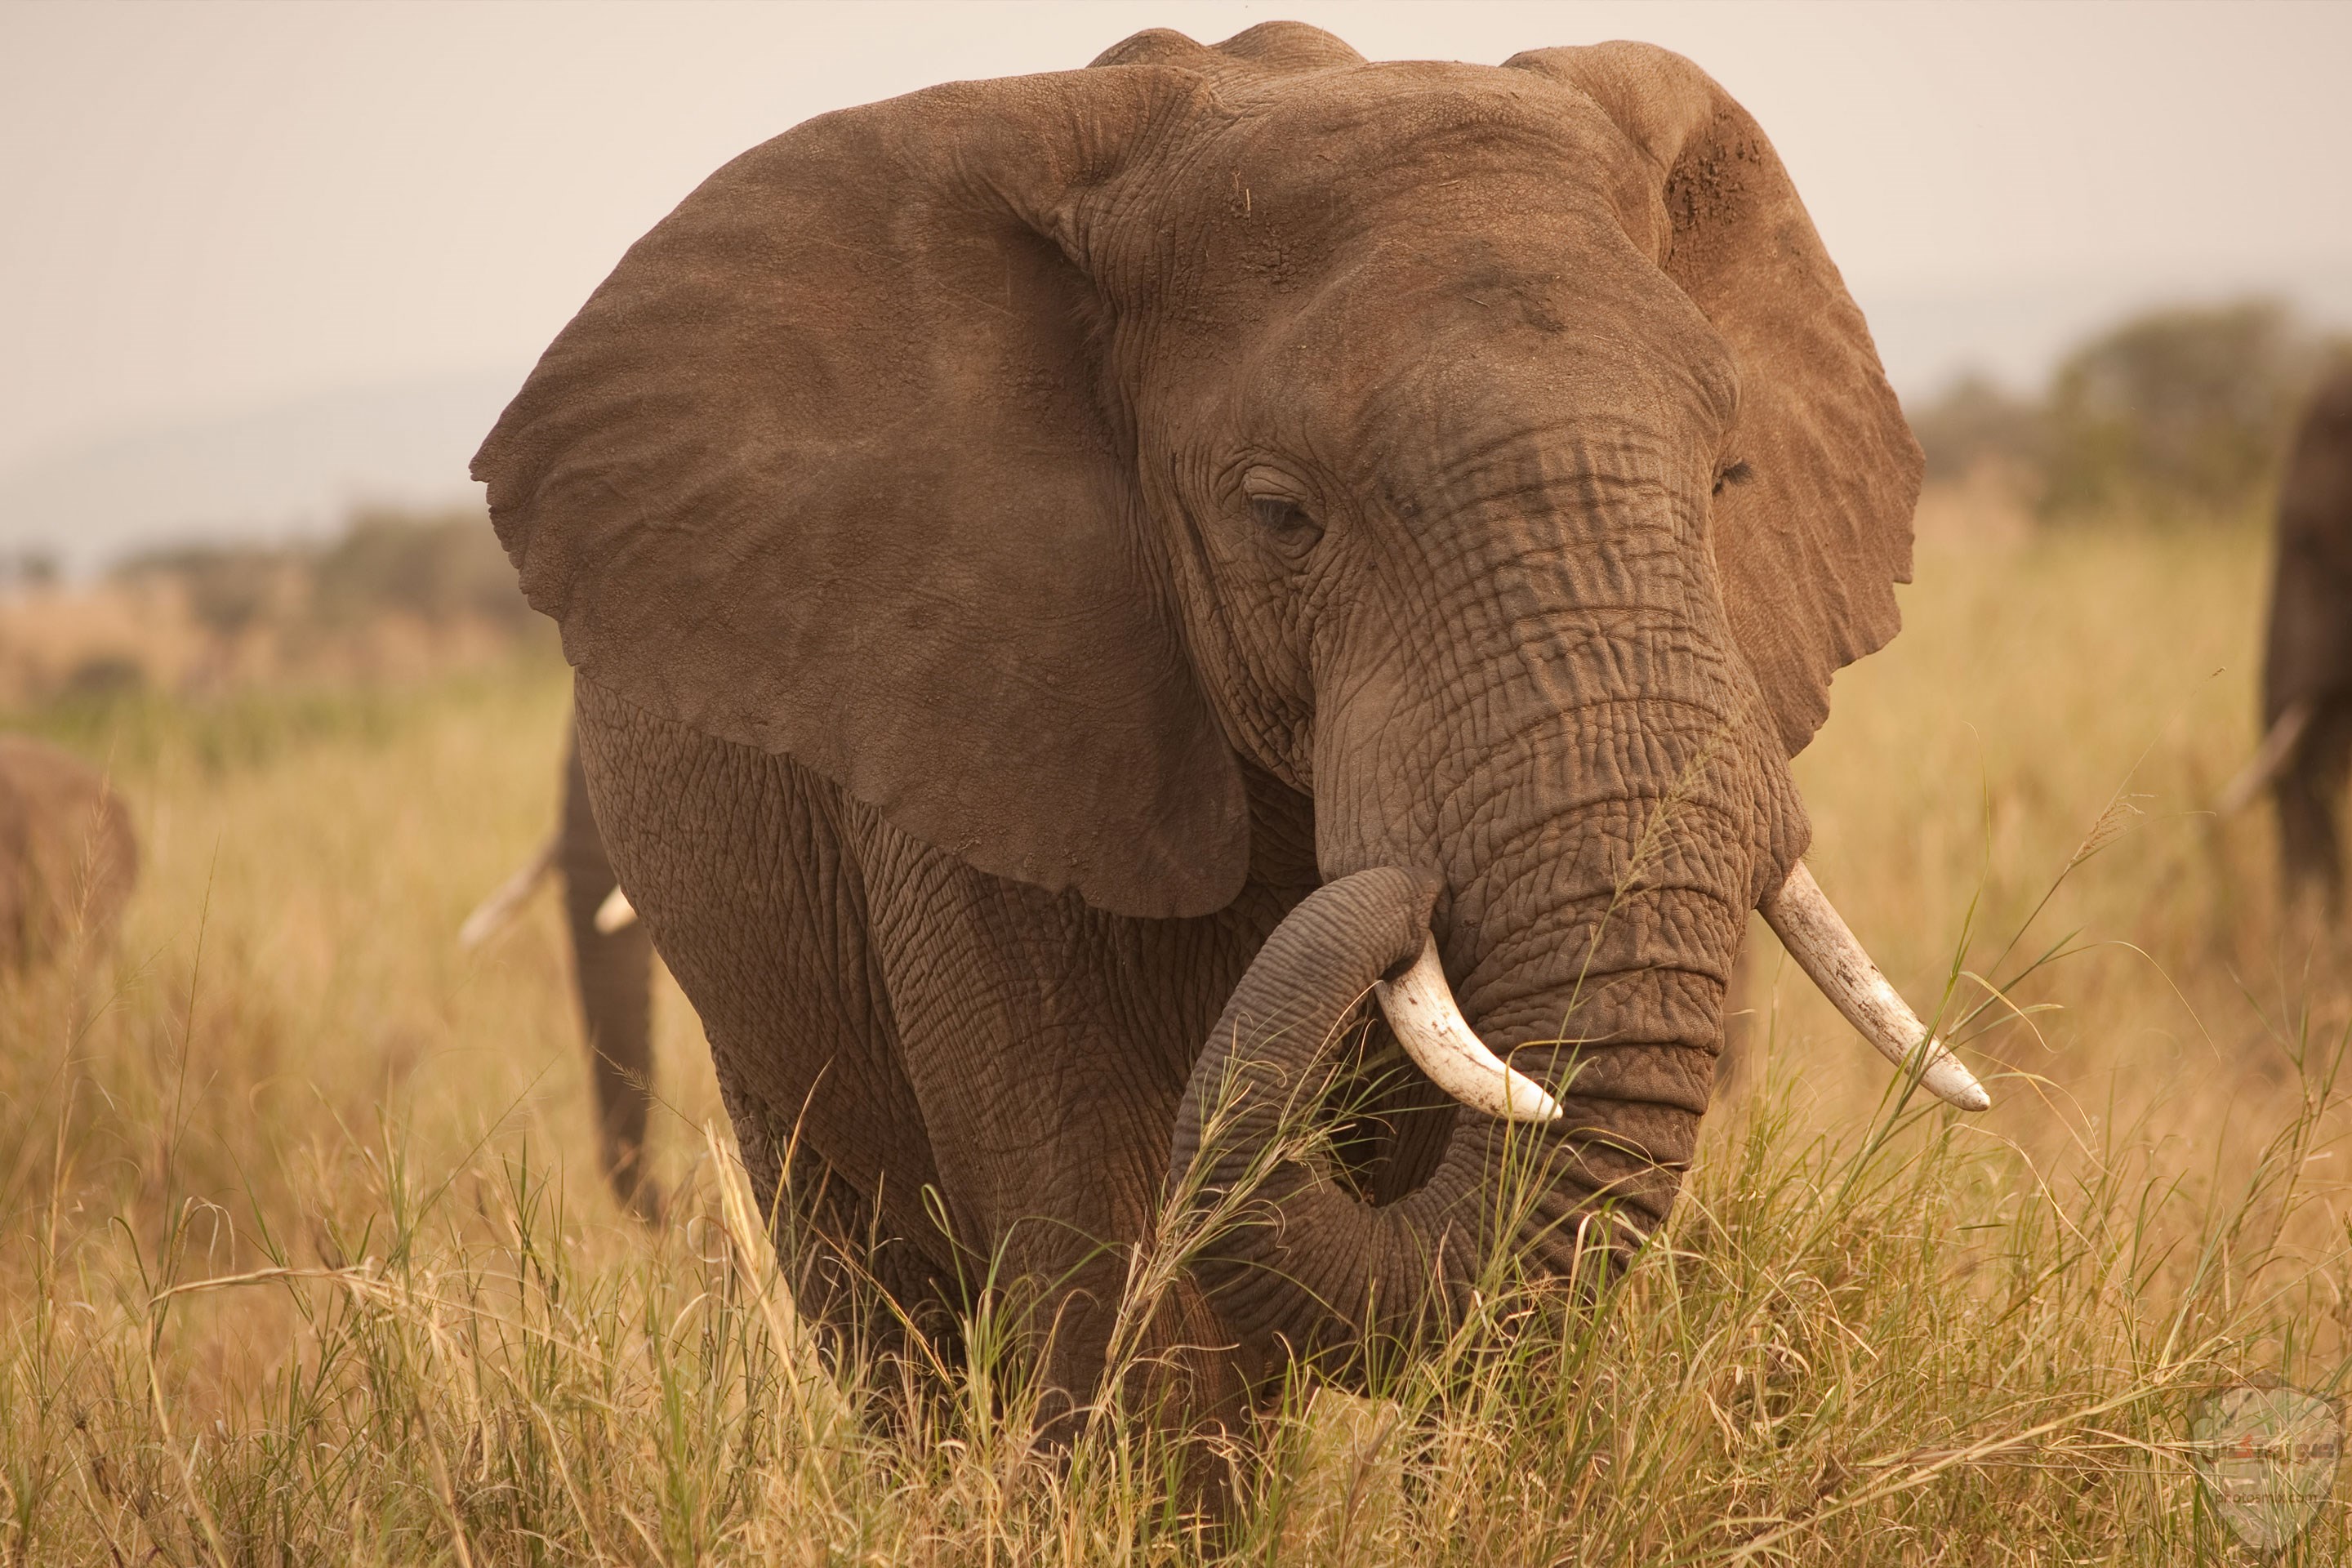 صور الفيل لمحبي الحيوانات وخصوصا الفيل سنقدم لكم مجموعة صور رائعة وجميلة جدا عن حيوان الفيل 4